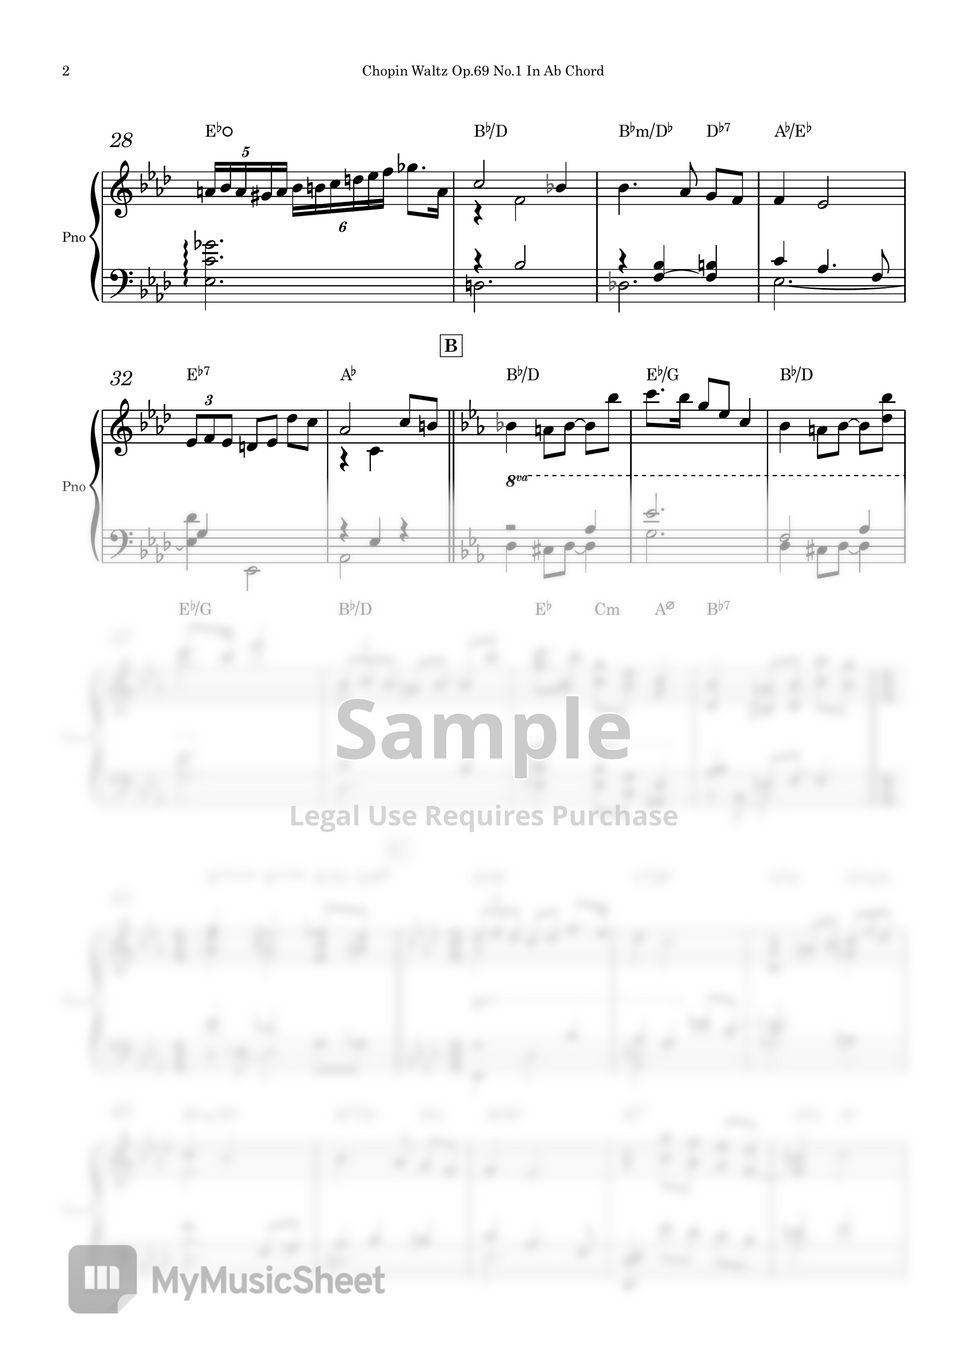 Chopin - Chopin Waltz Op.69 No.1 (A solo piano score) by Piano QQQ